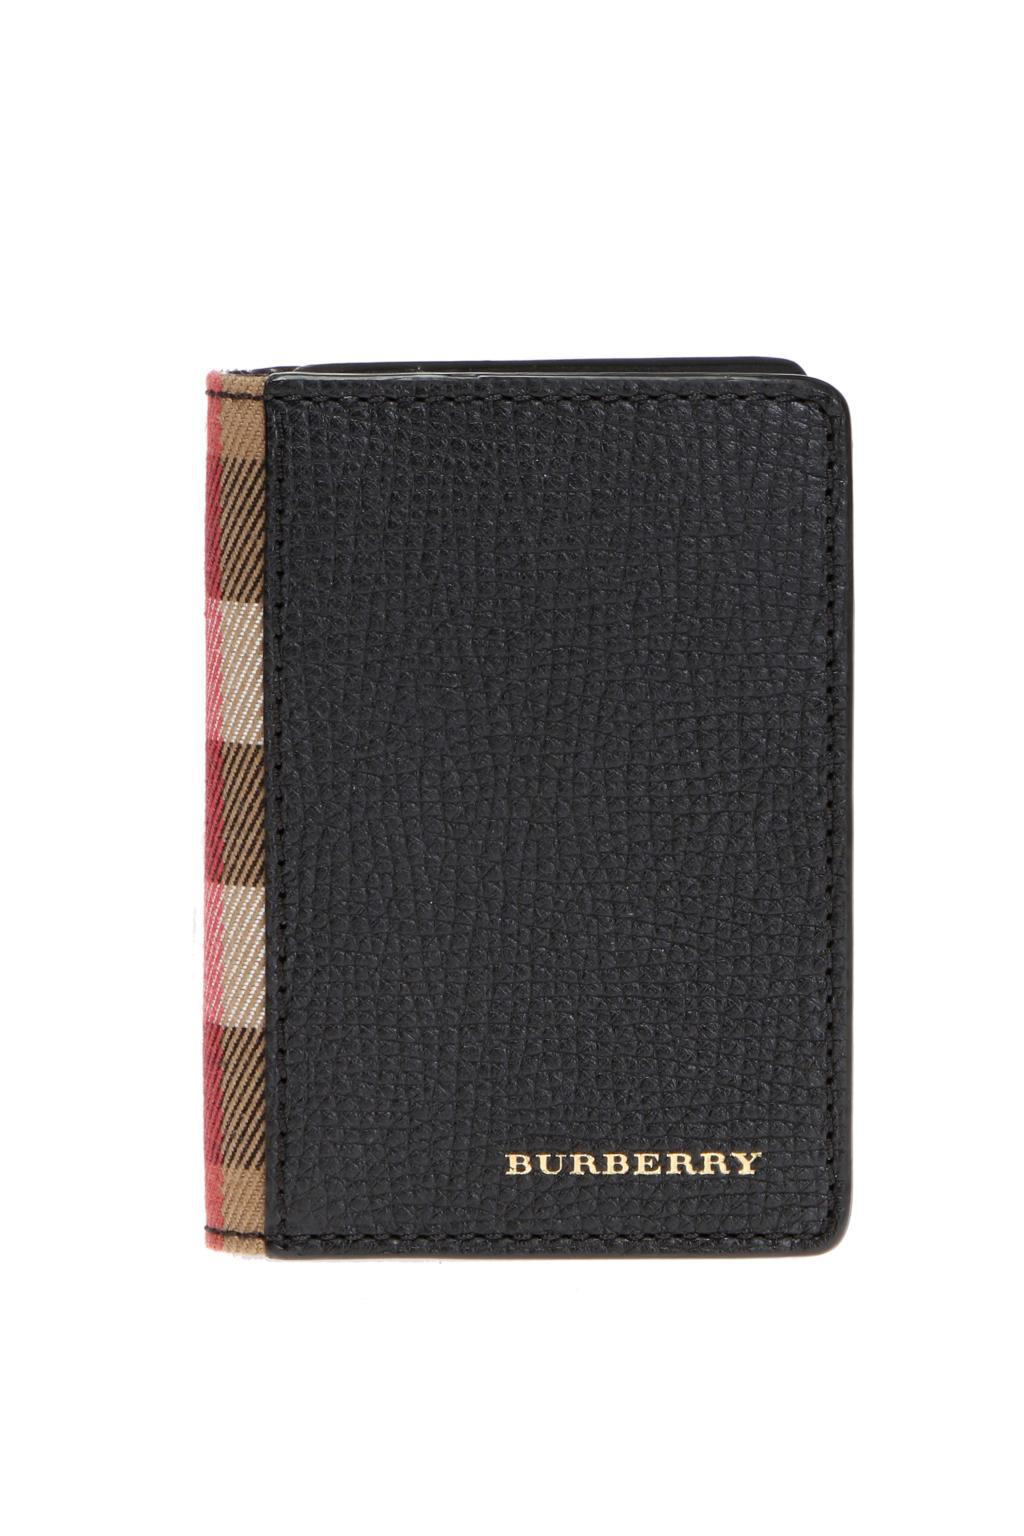 burberry card case sale